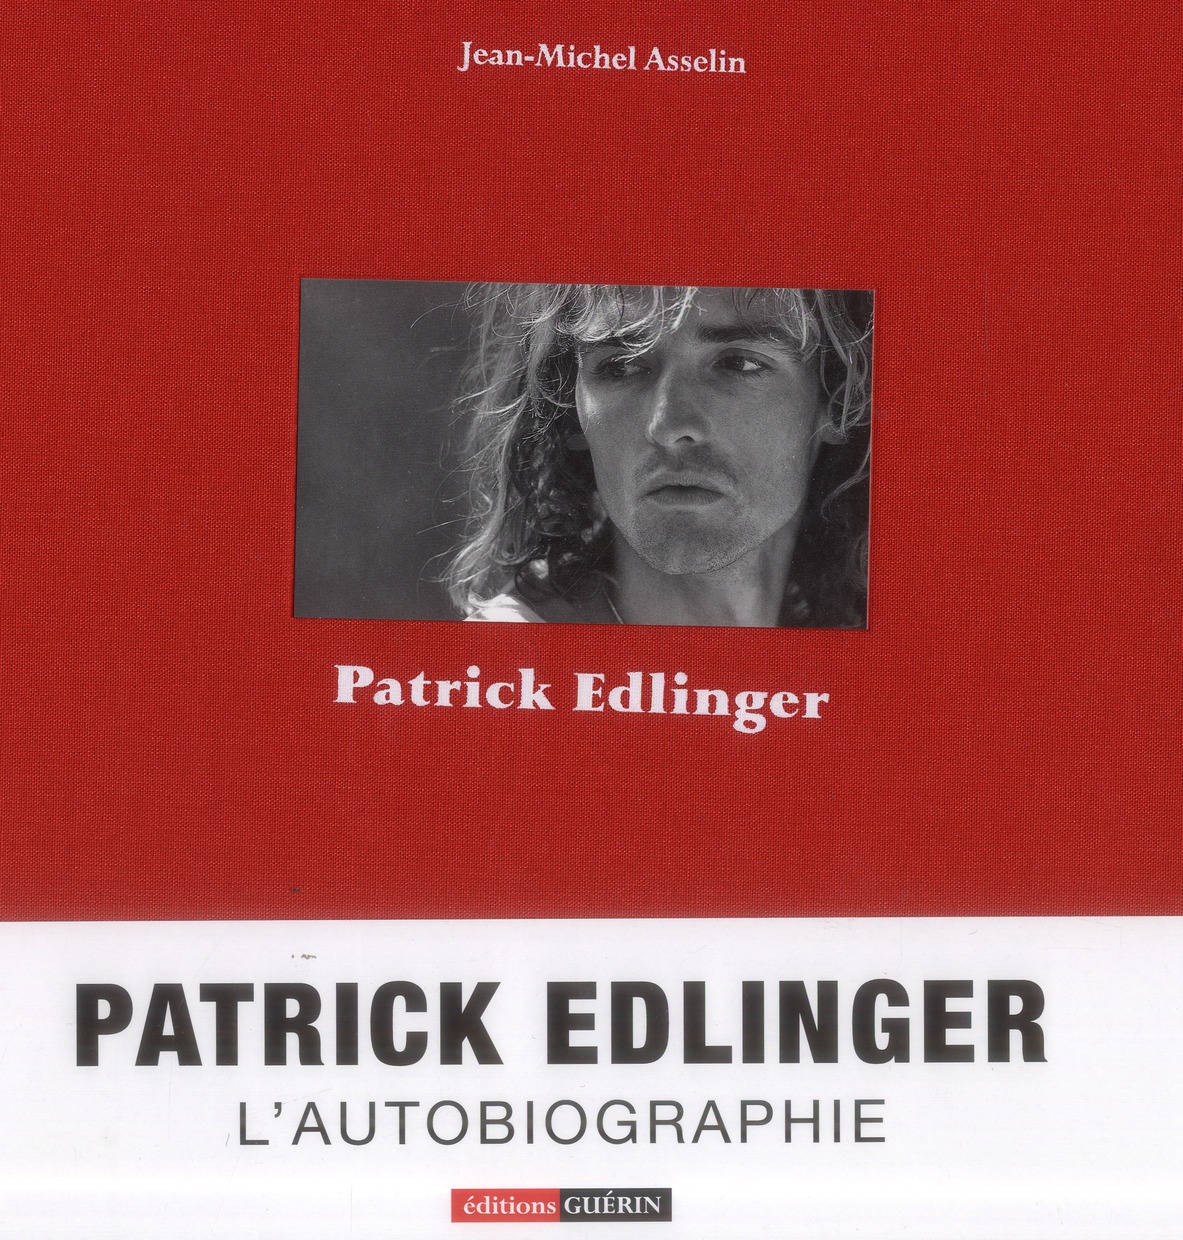 PATRICK EDLINGER